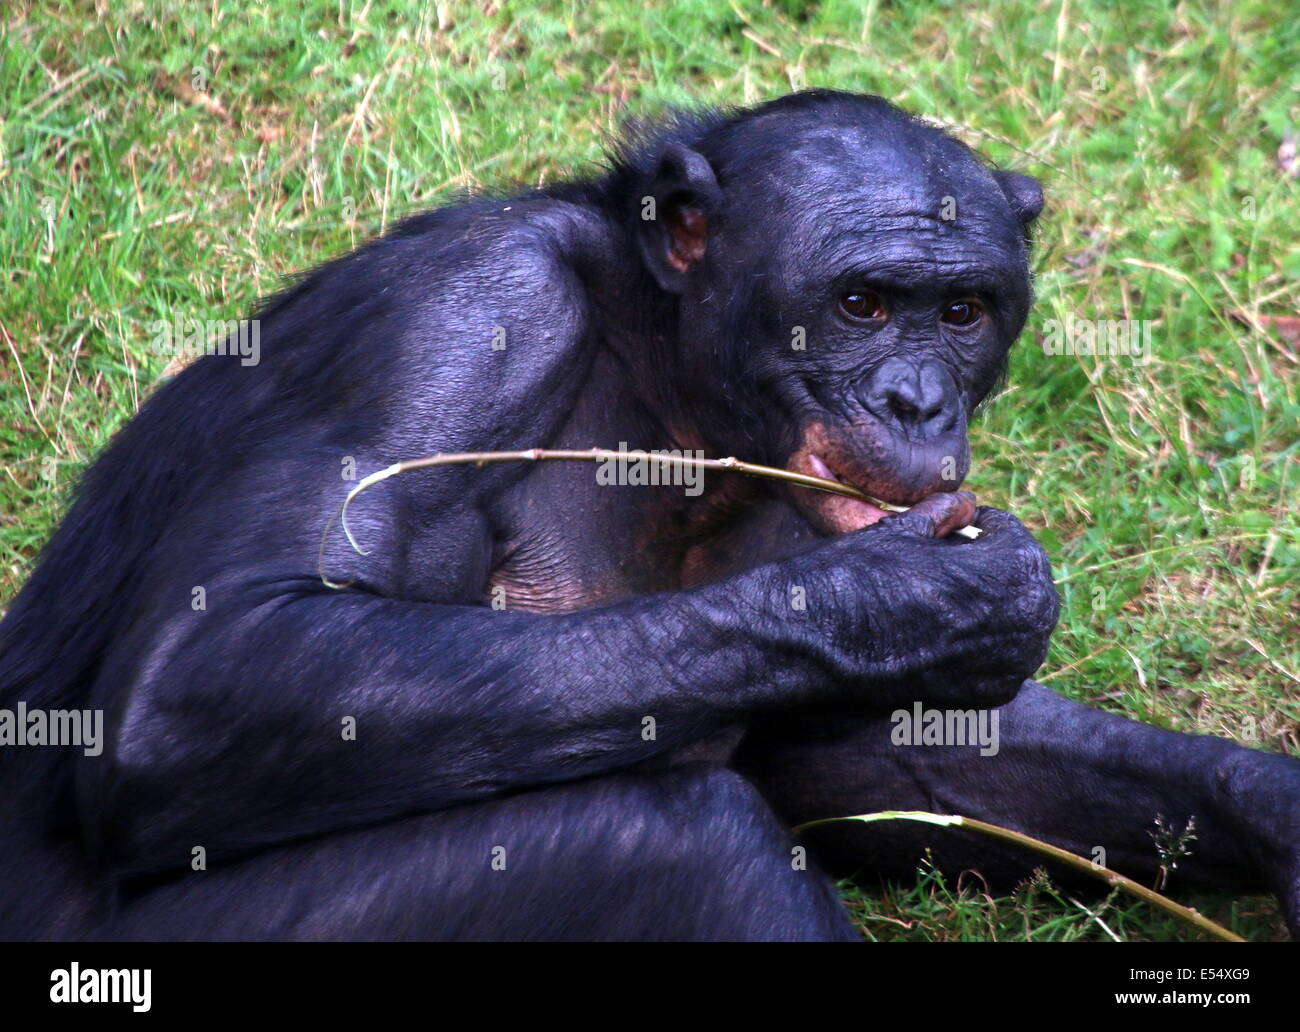 Retrato cercano de un macho maduro (anteriormente) el bonobo o chimpancé pigmeo (Pan paniscus) en un entorno natural Foto de stock